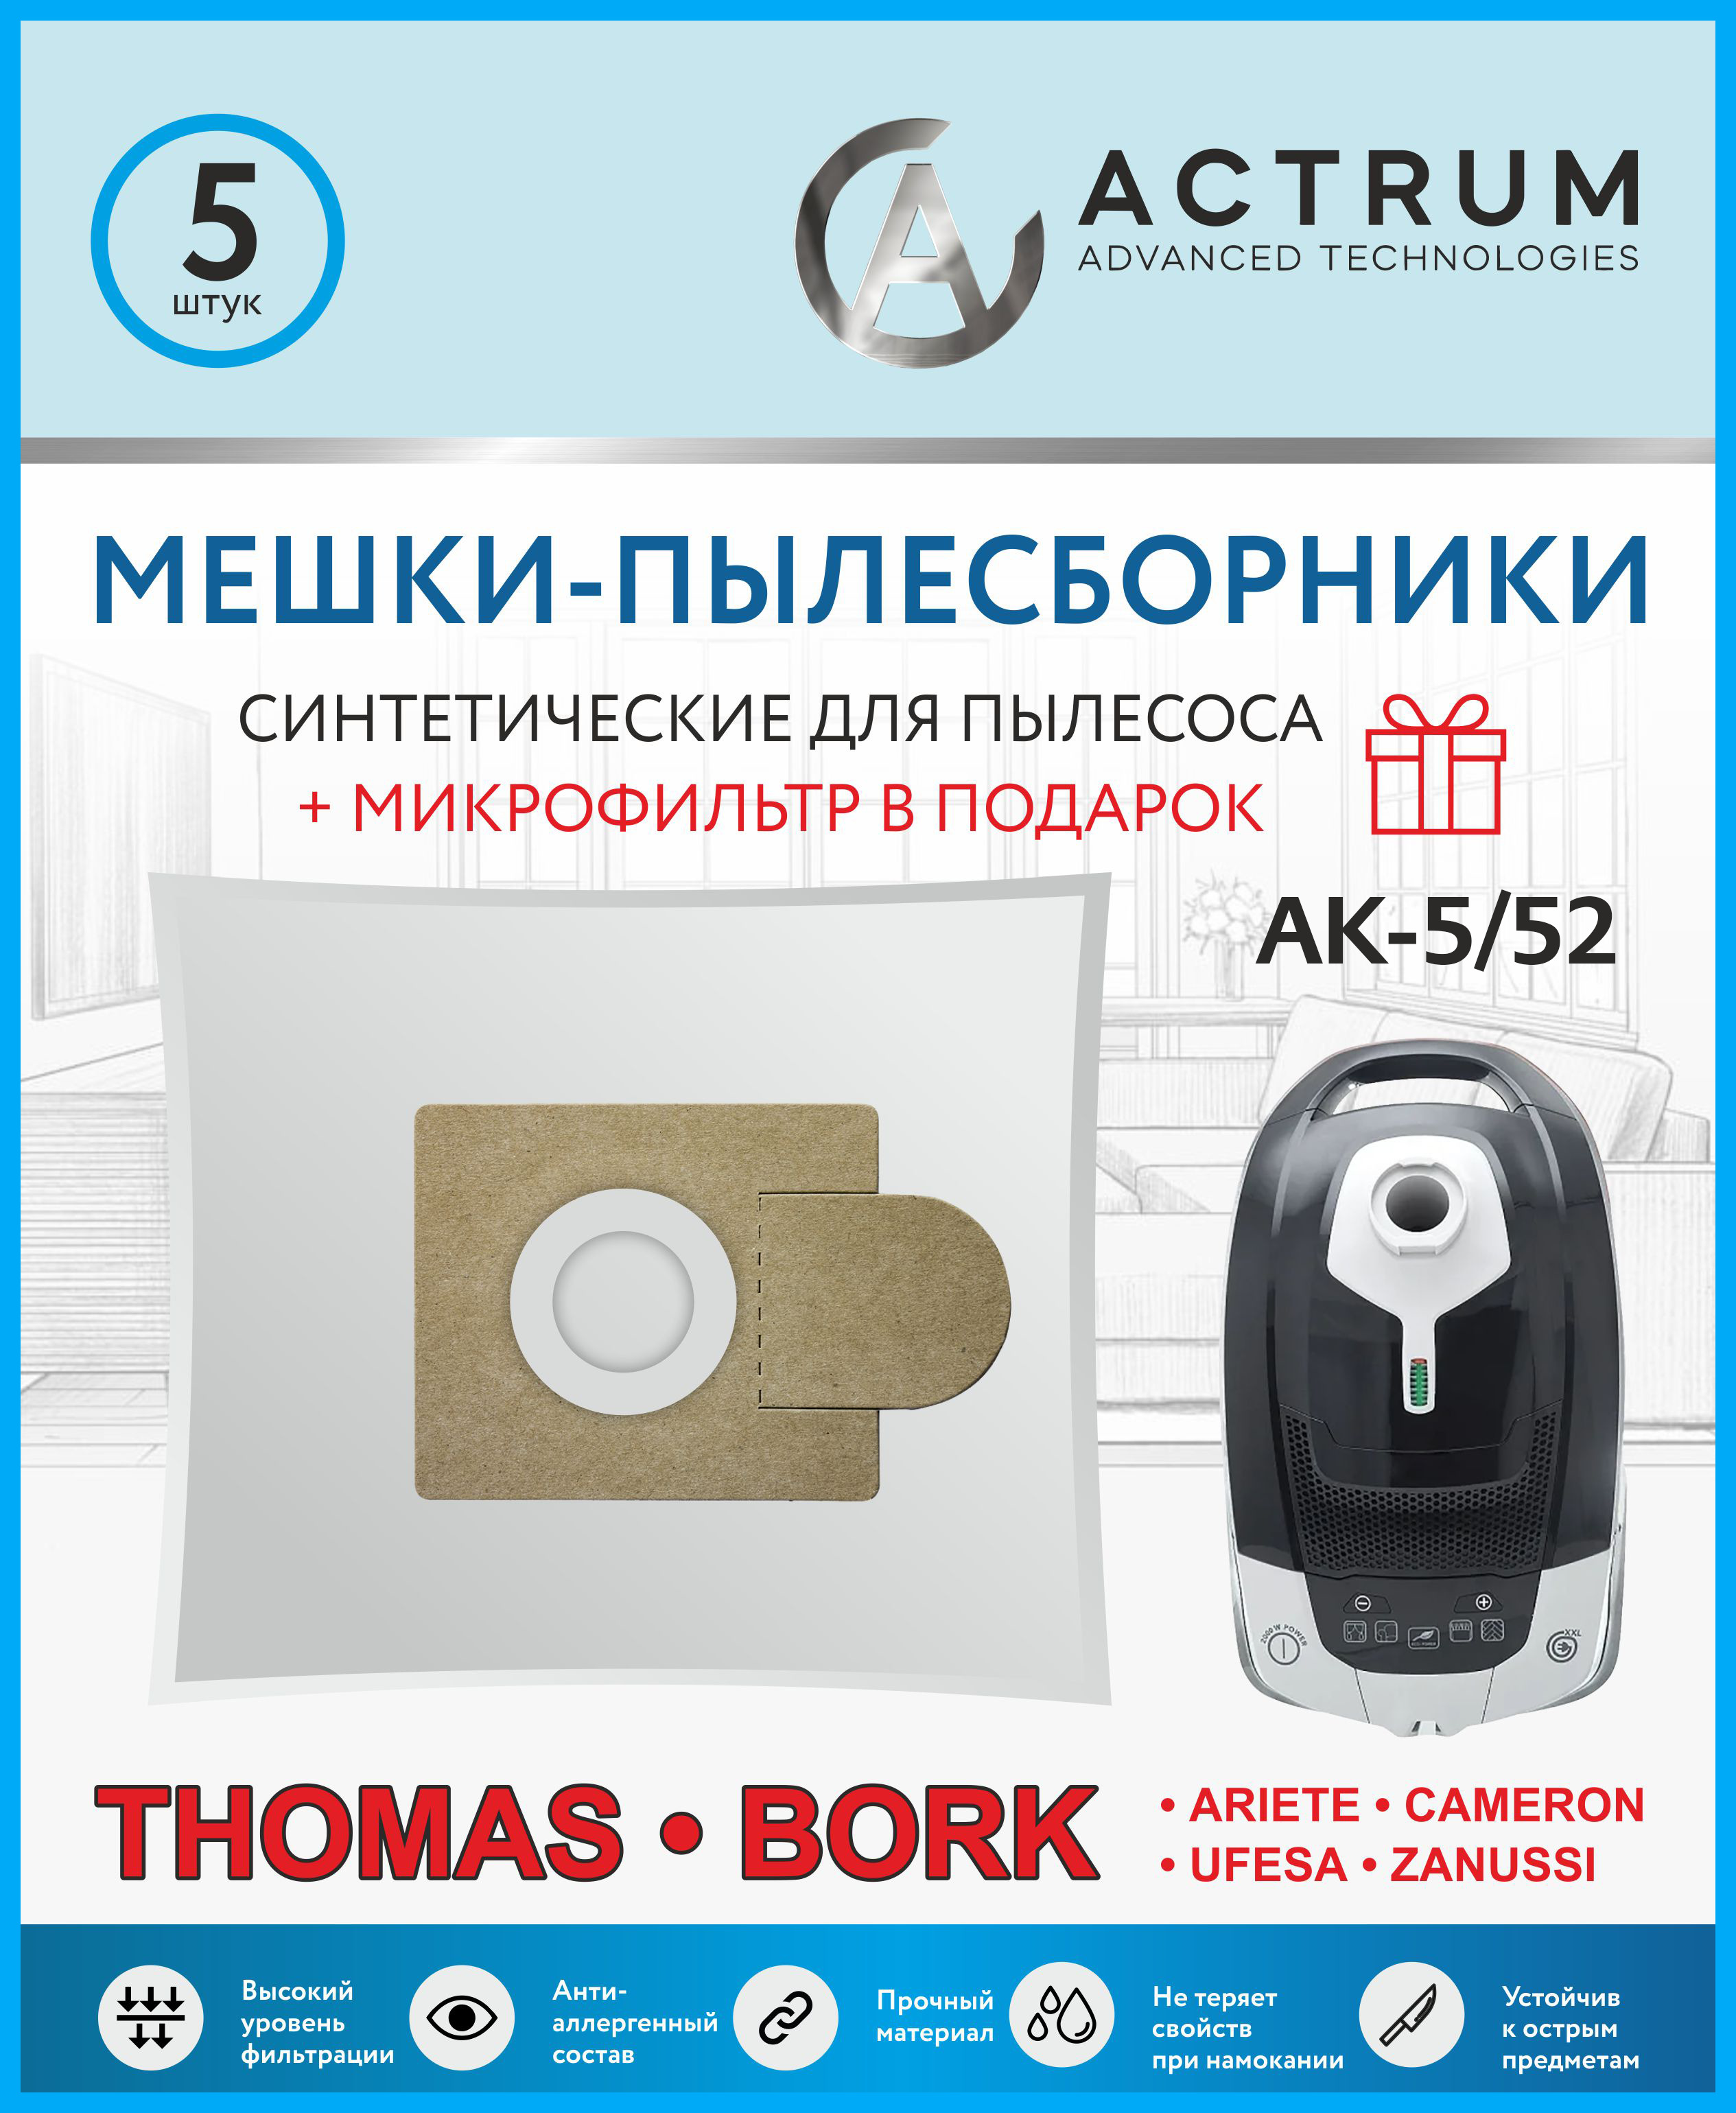 Пылесборник ACTRUM AK-5/52 пылесборник для zelmer actrum ak 5 53 5 шт